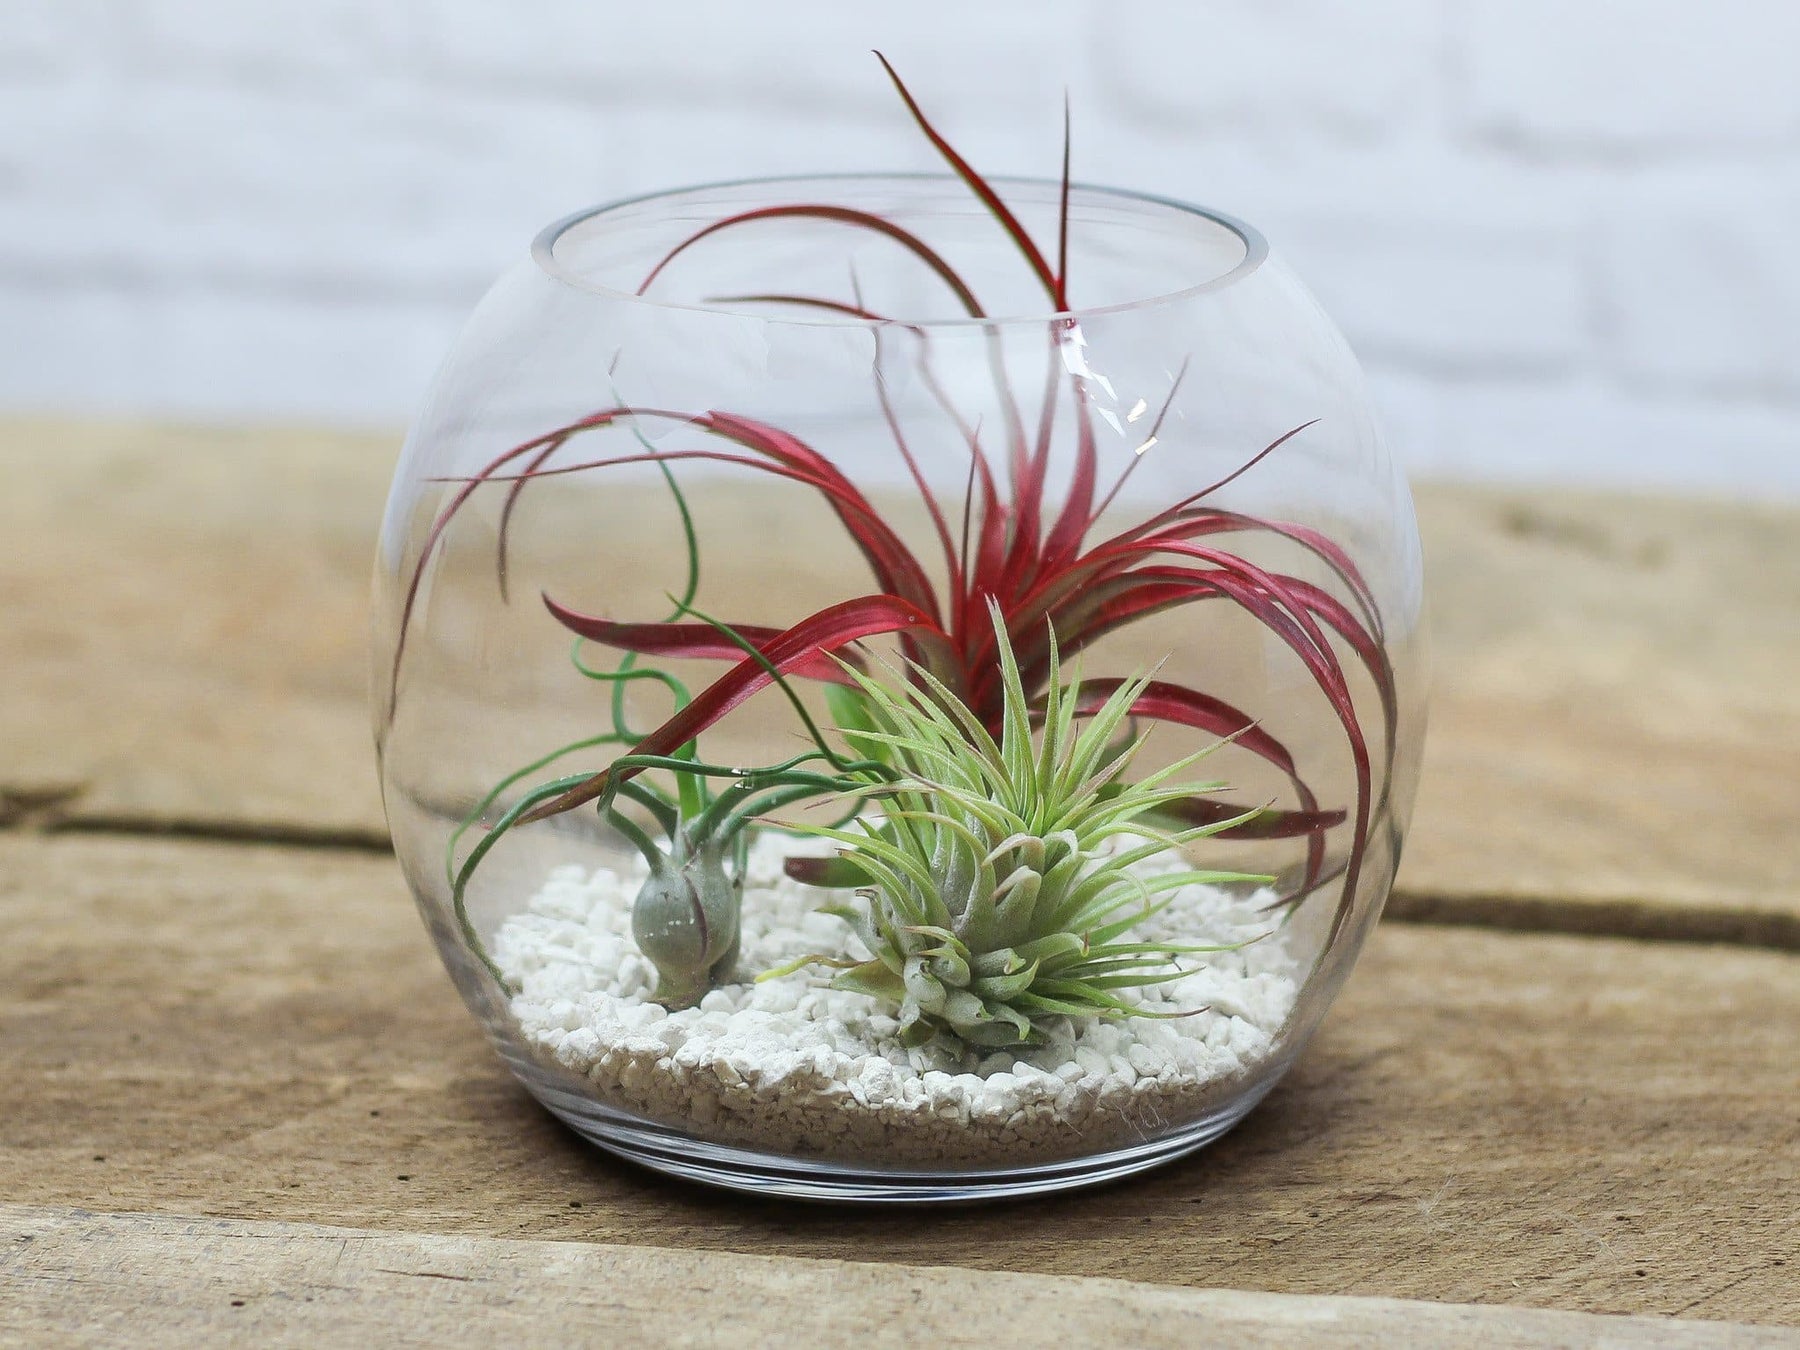 Premium Photo  Mini succulent garden in glass terrarium on